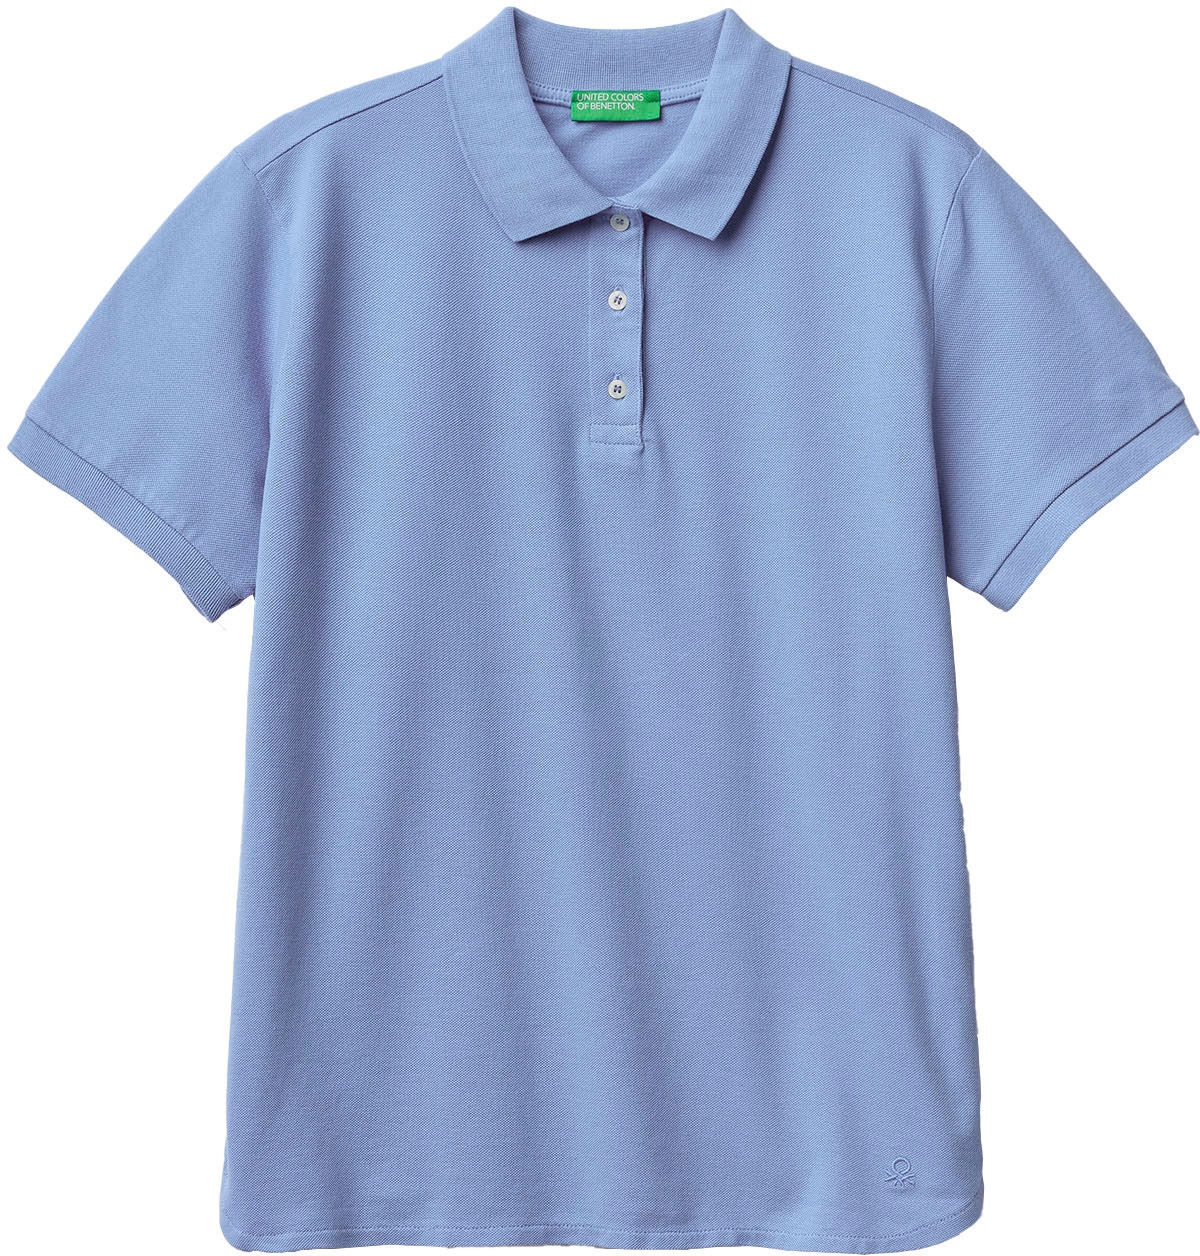 United Colors of Benetton Poloshirt, kaufen bei mit Knöpfen online perlmuttfarbenen OTTO